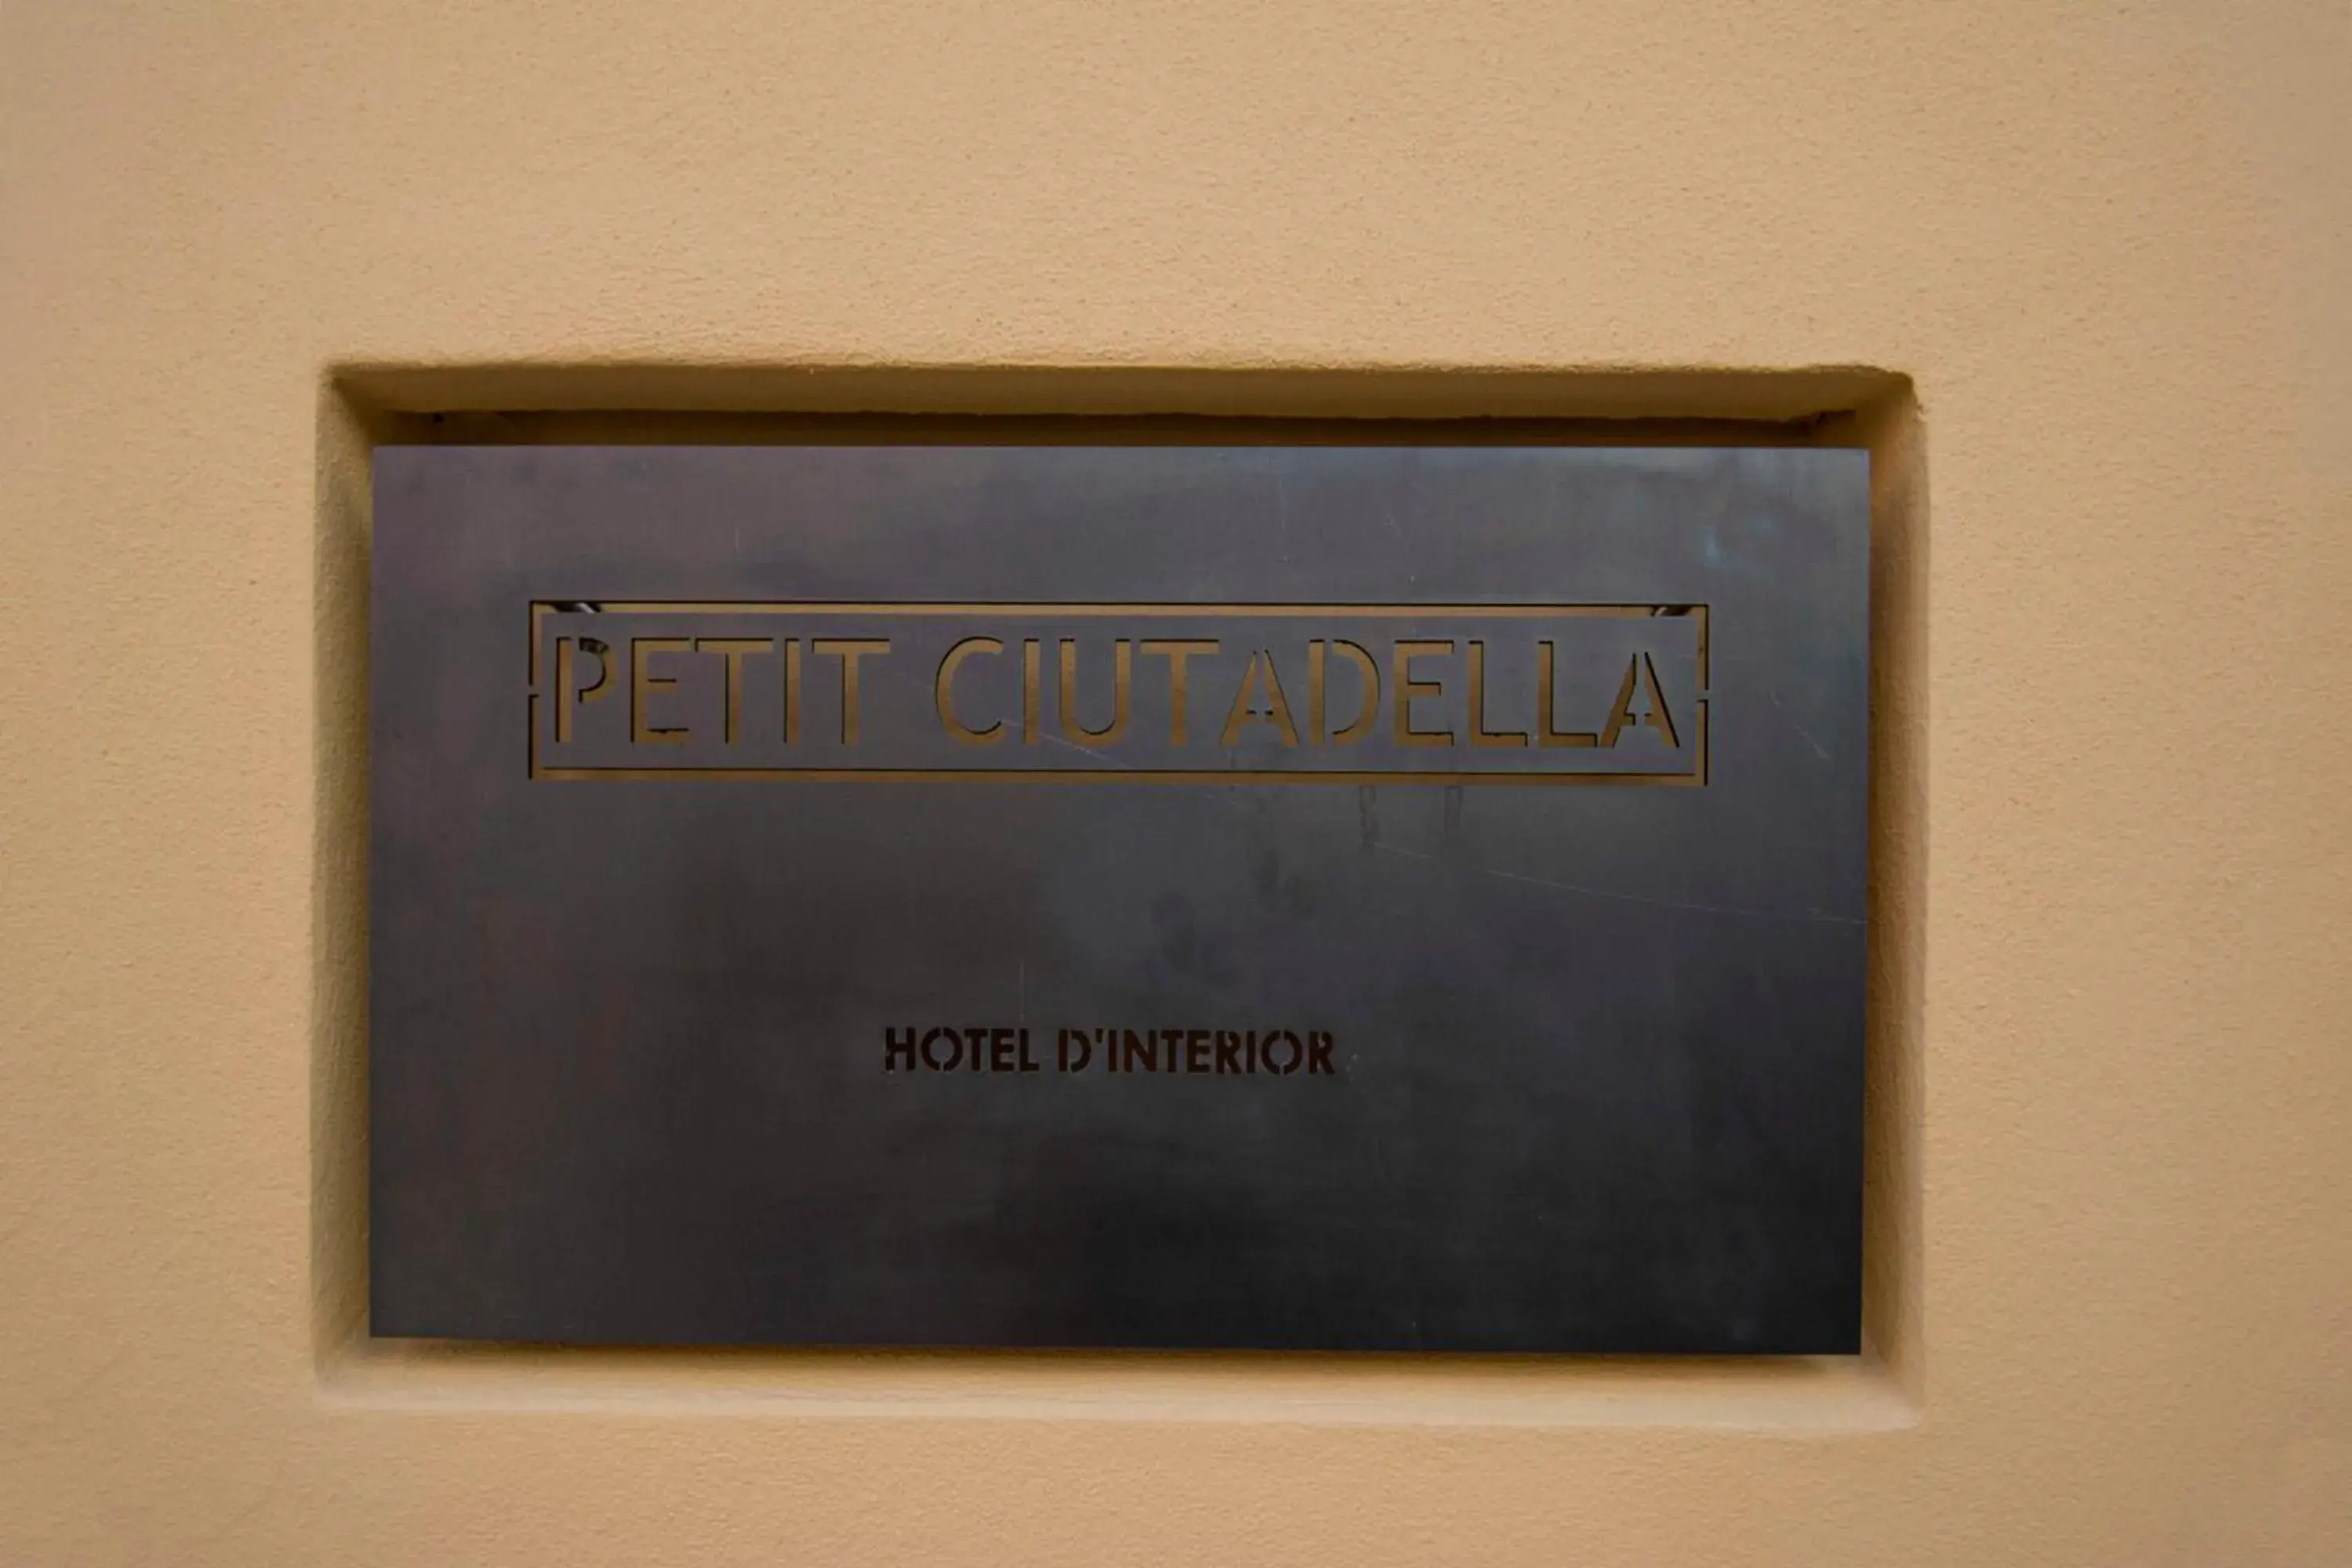 Logo/Certificate/Sign in Petit Hotel Ciutadella